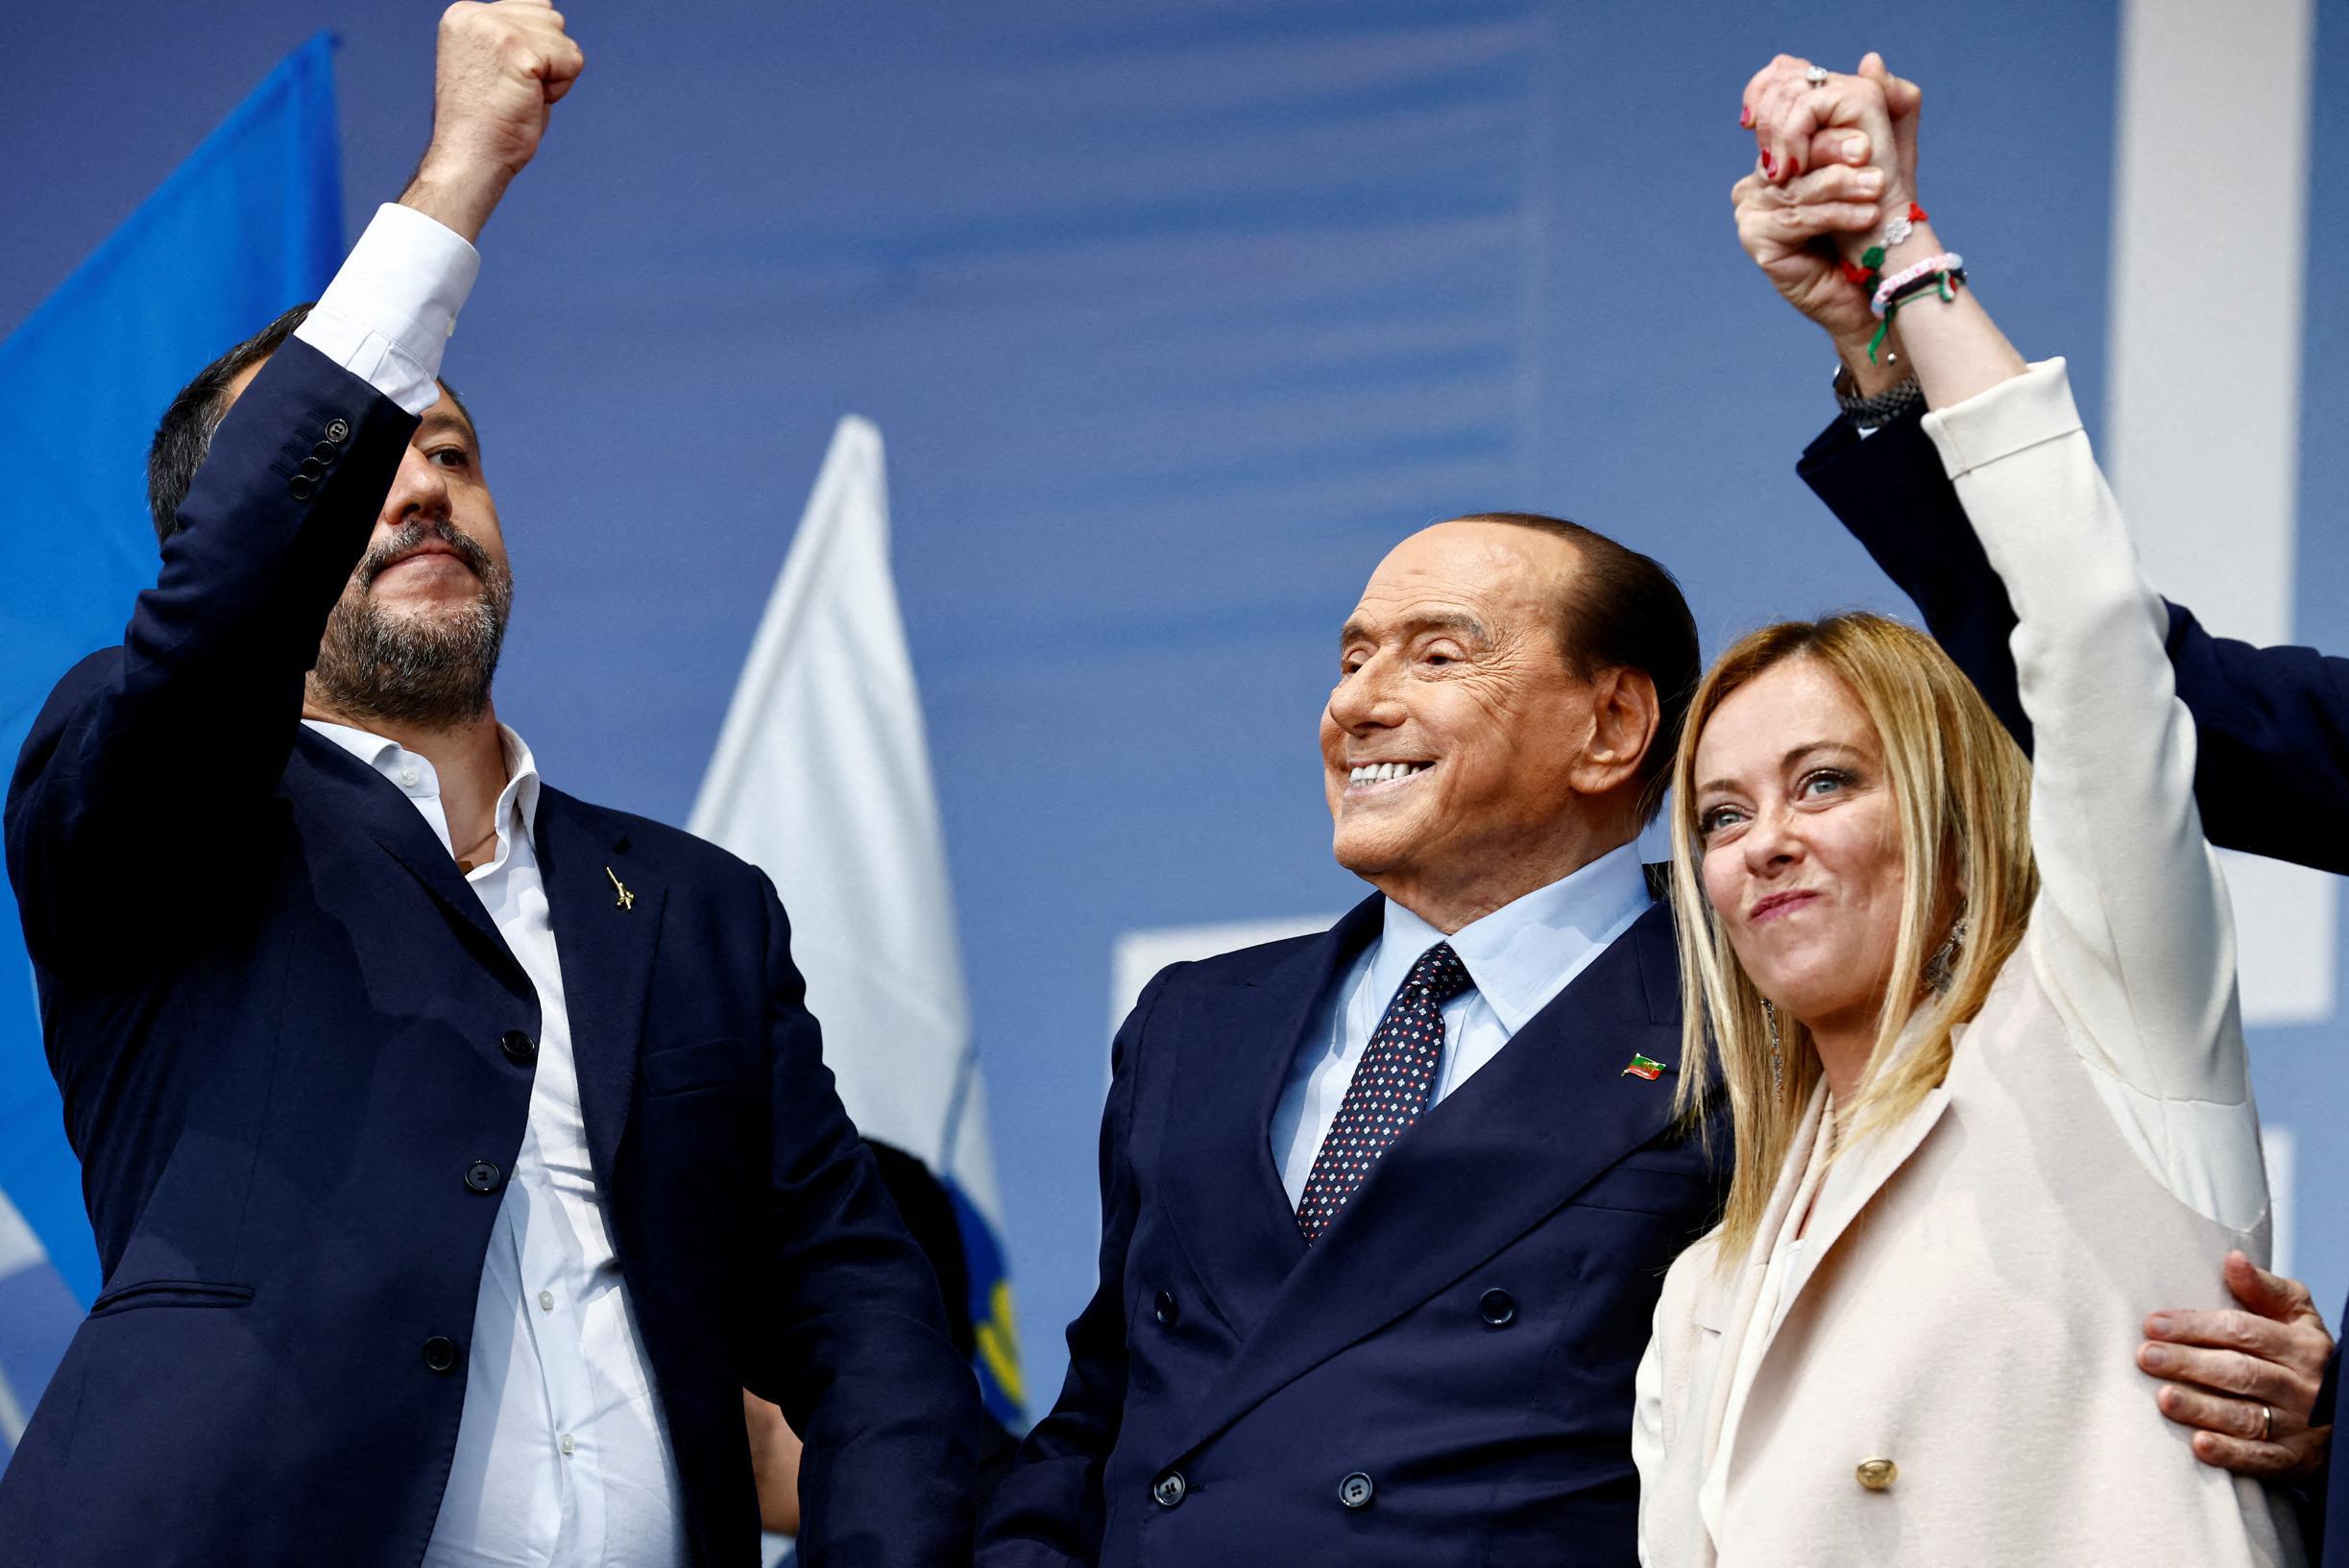 Litigi coalizione italiana prima dell’inizio dei colloqui di formazione: Meloni esita dopo le dichiarazioni di Berlusconi sull’Ucraina